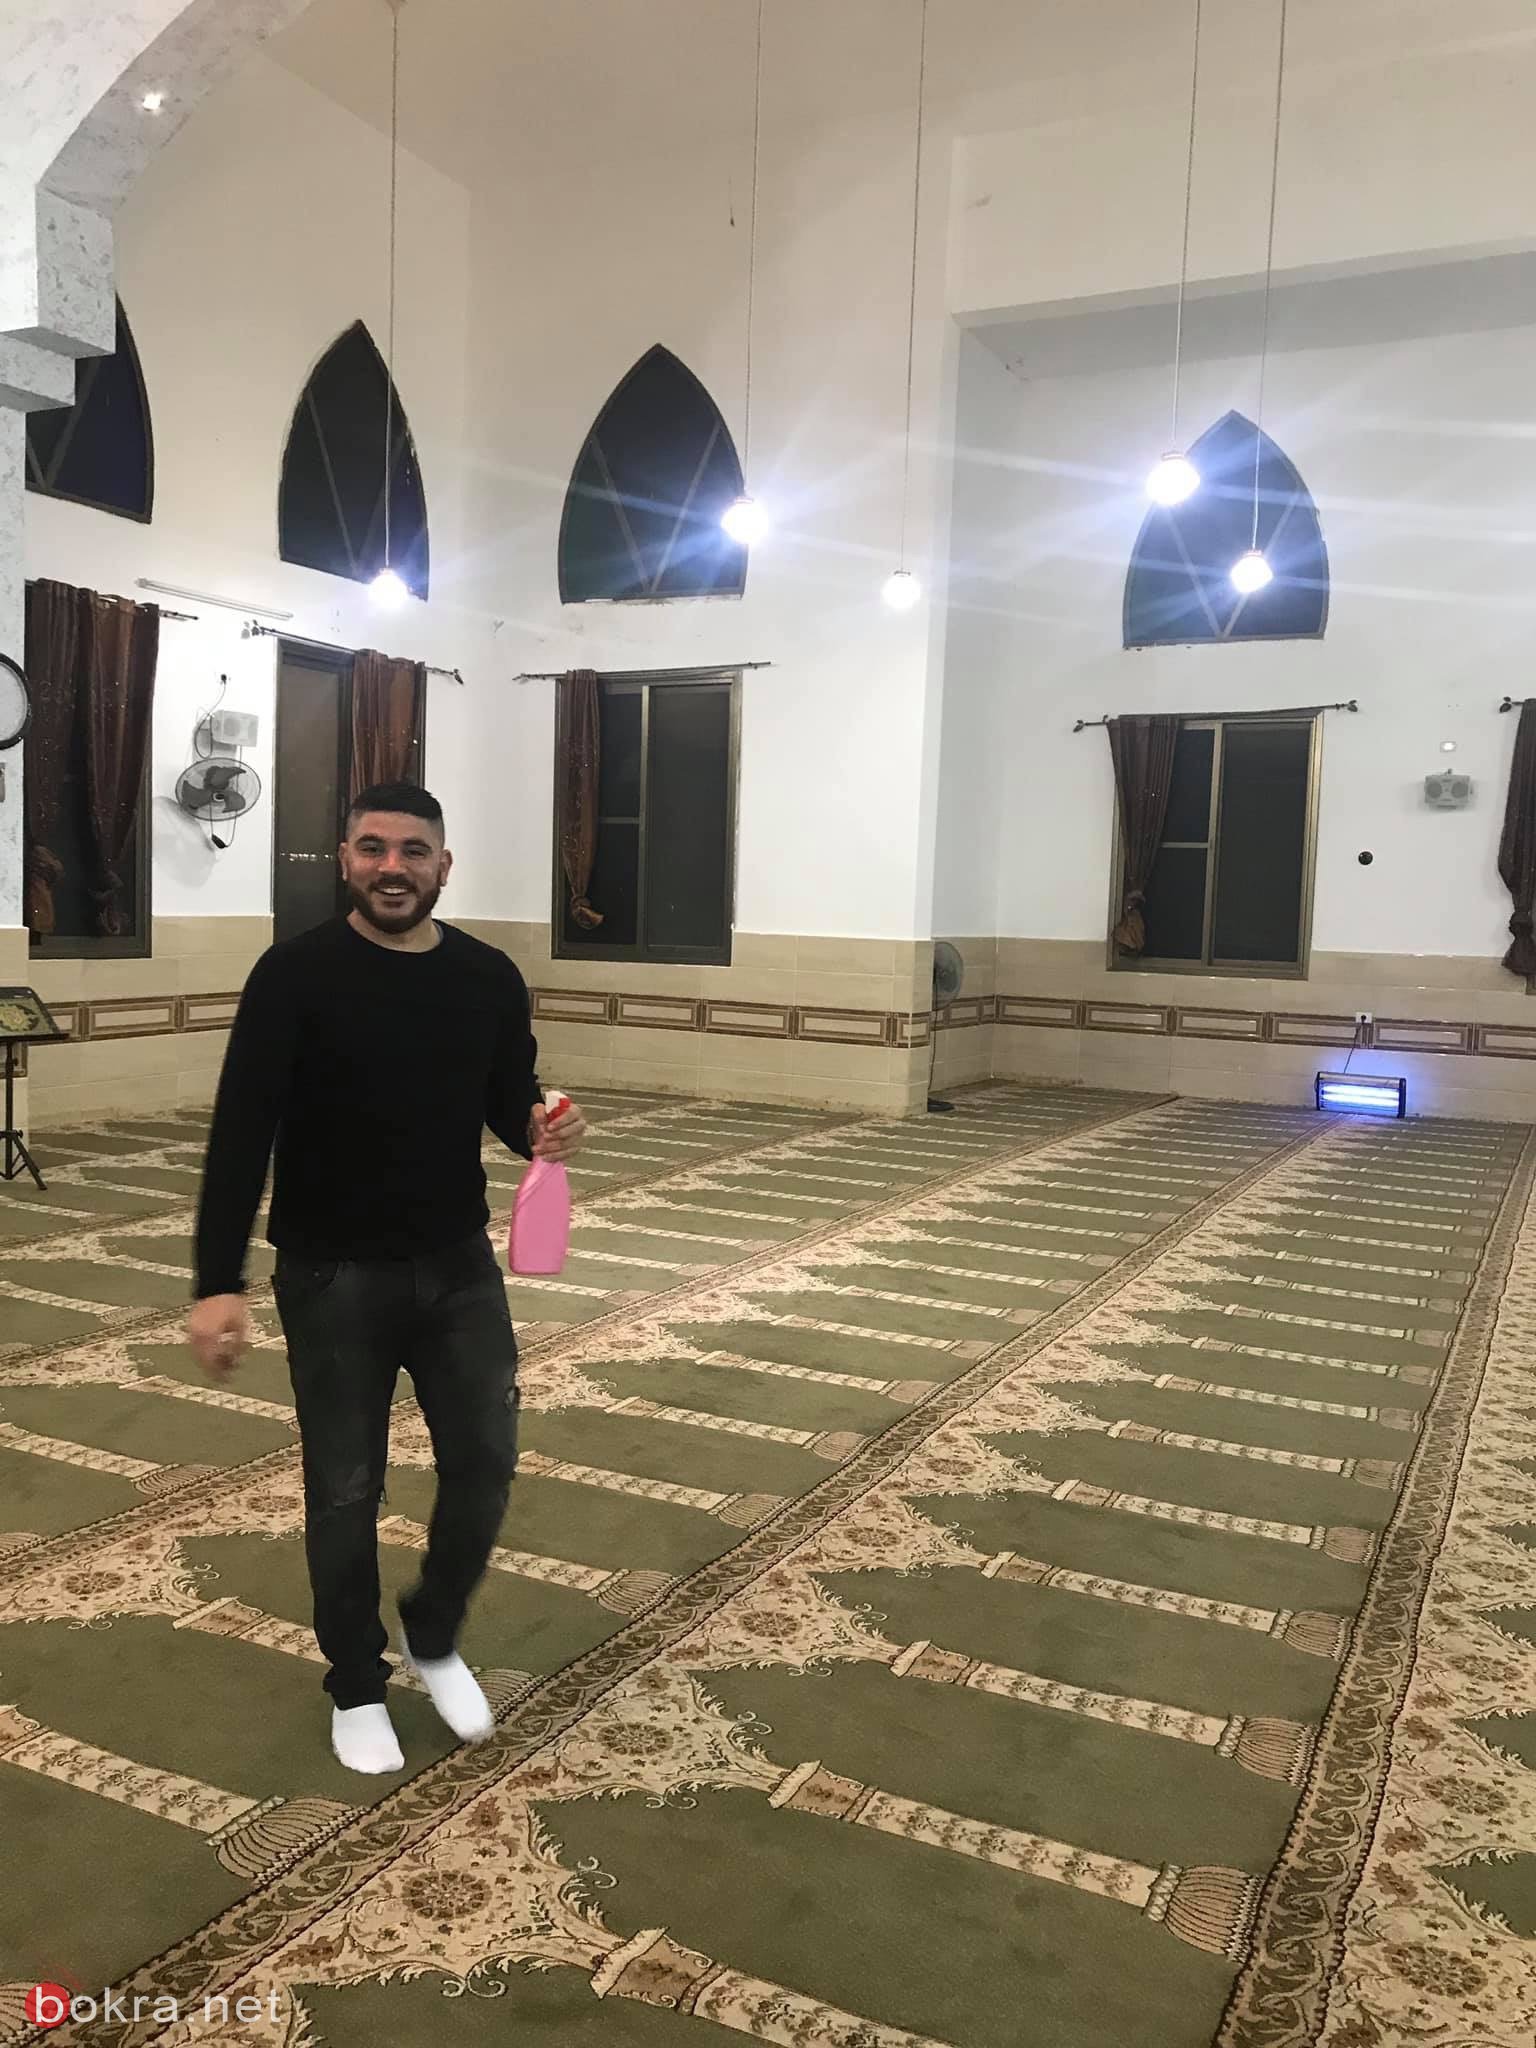 الجامعة الامريكيّة في جنين: تزيين مسجد السكنات بمبادرة من طلّاب ام الفحم -1